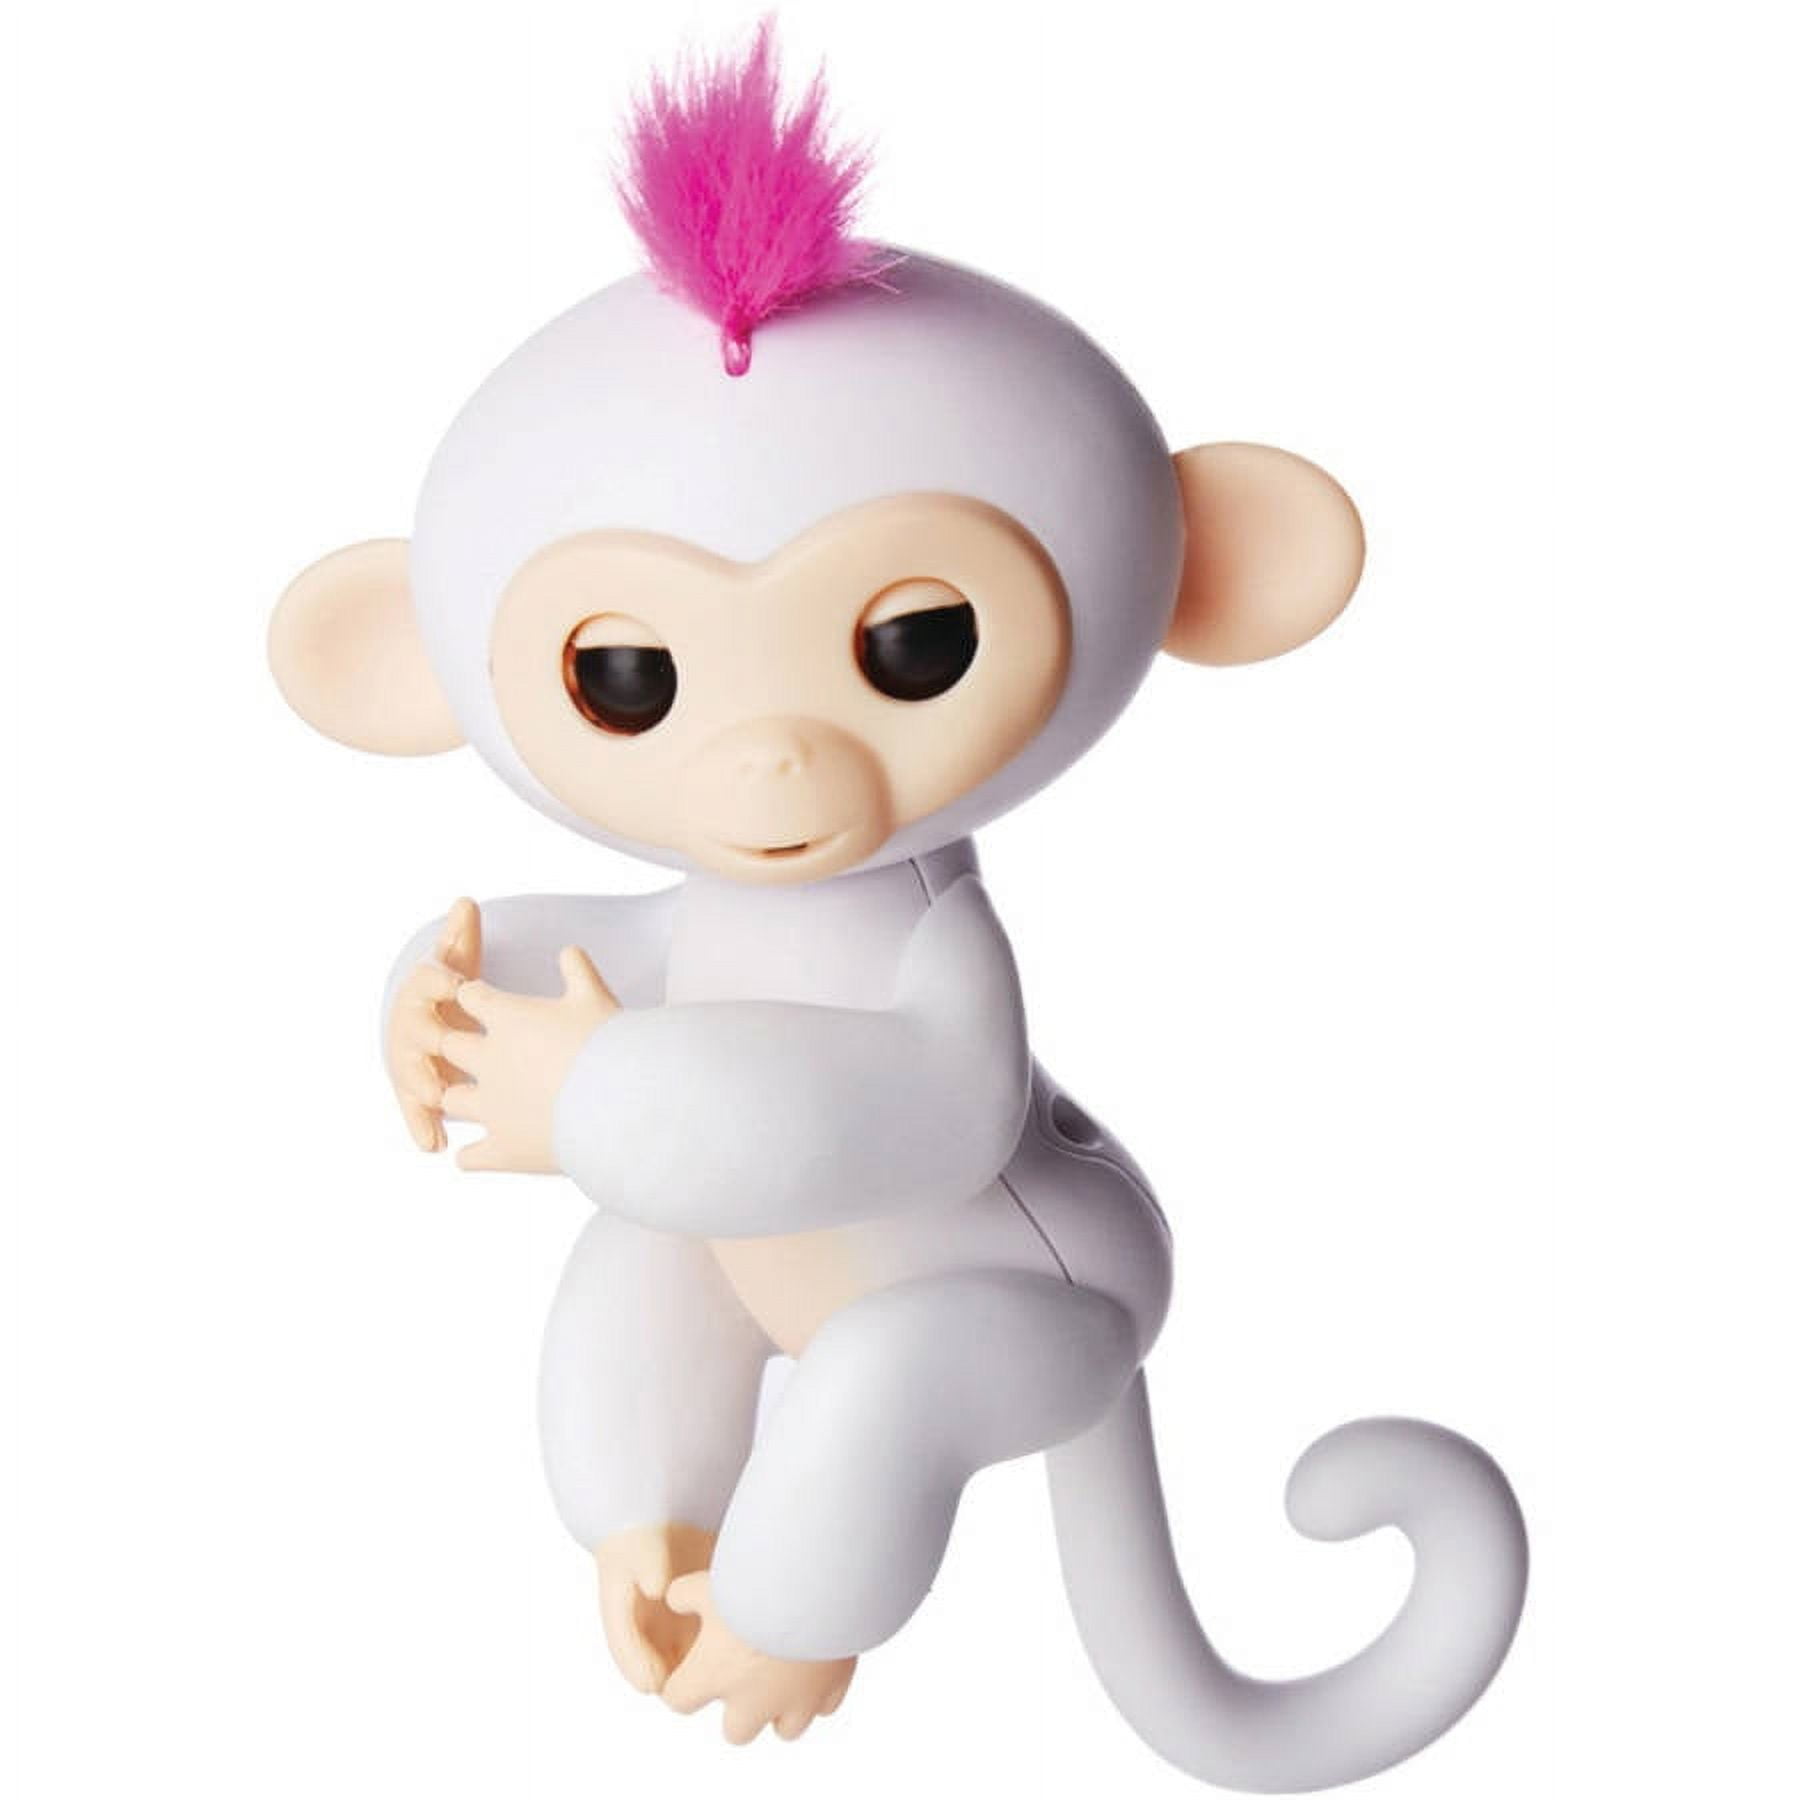 Fingerlings Zoe Interactive Pet Baby Monkey Toy Teal w/ Purple Hair + Mini